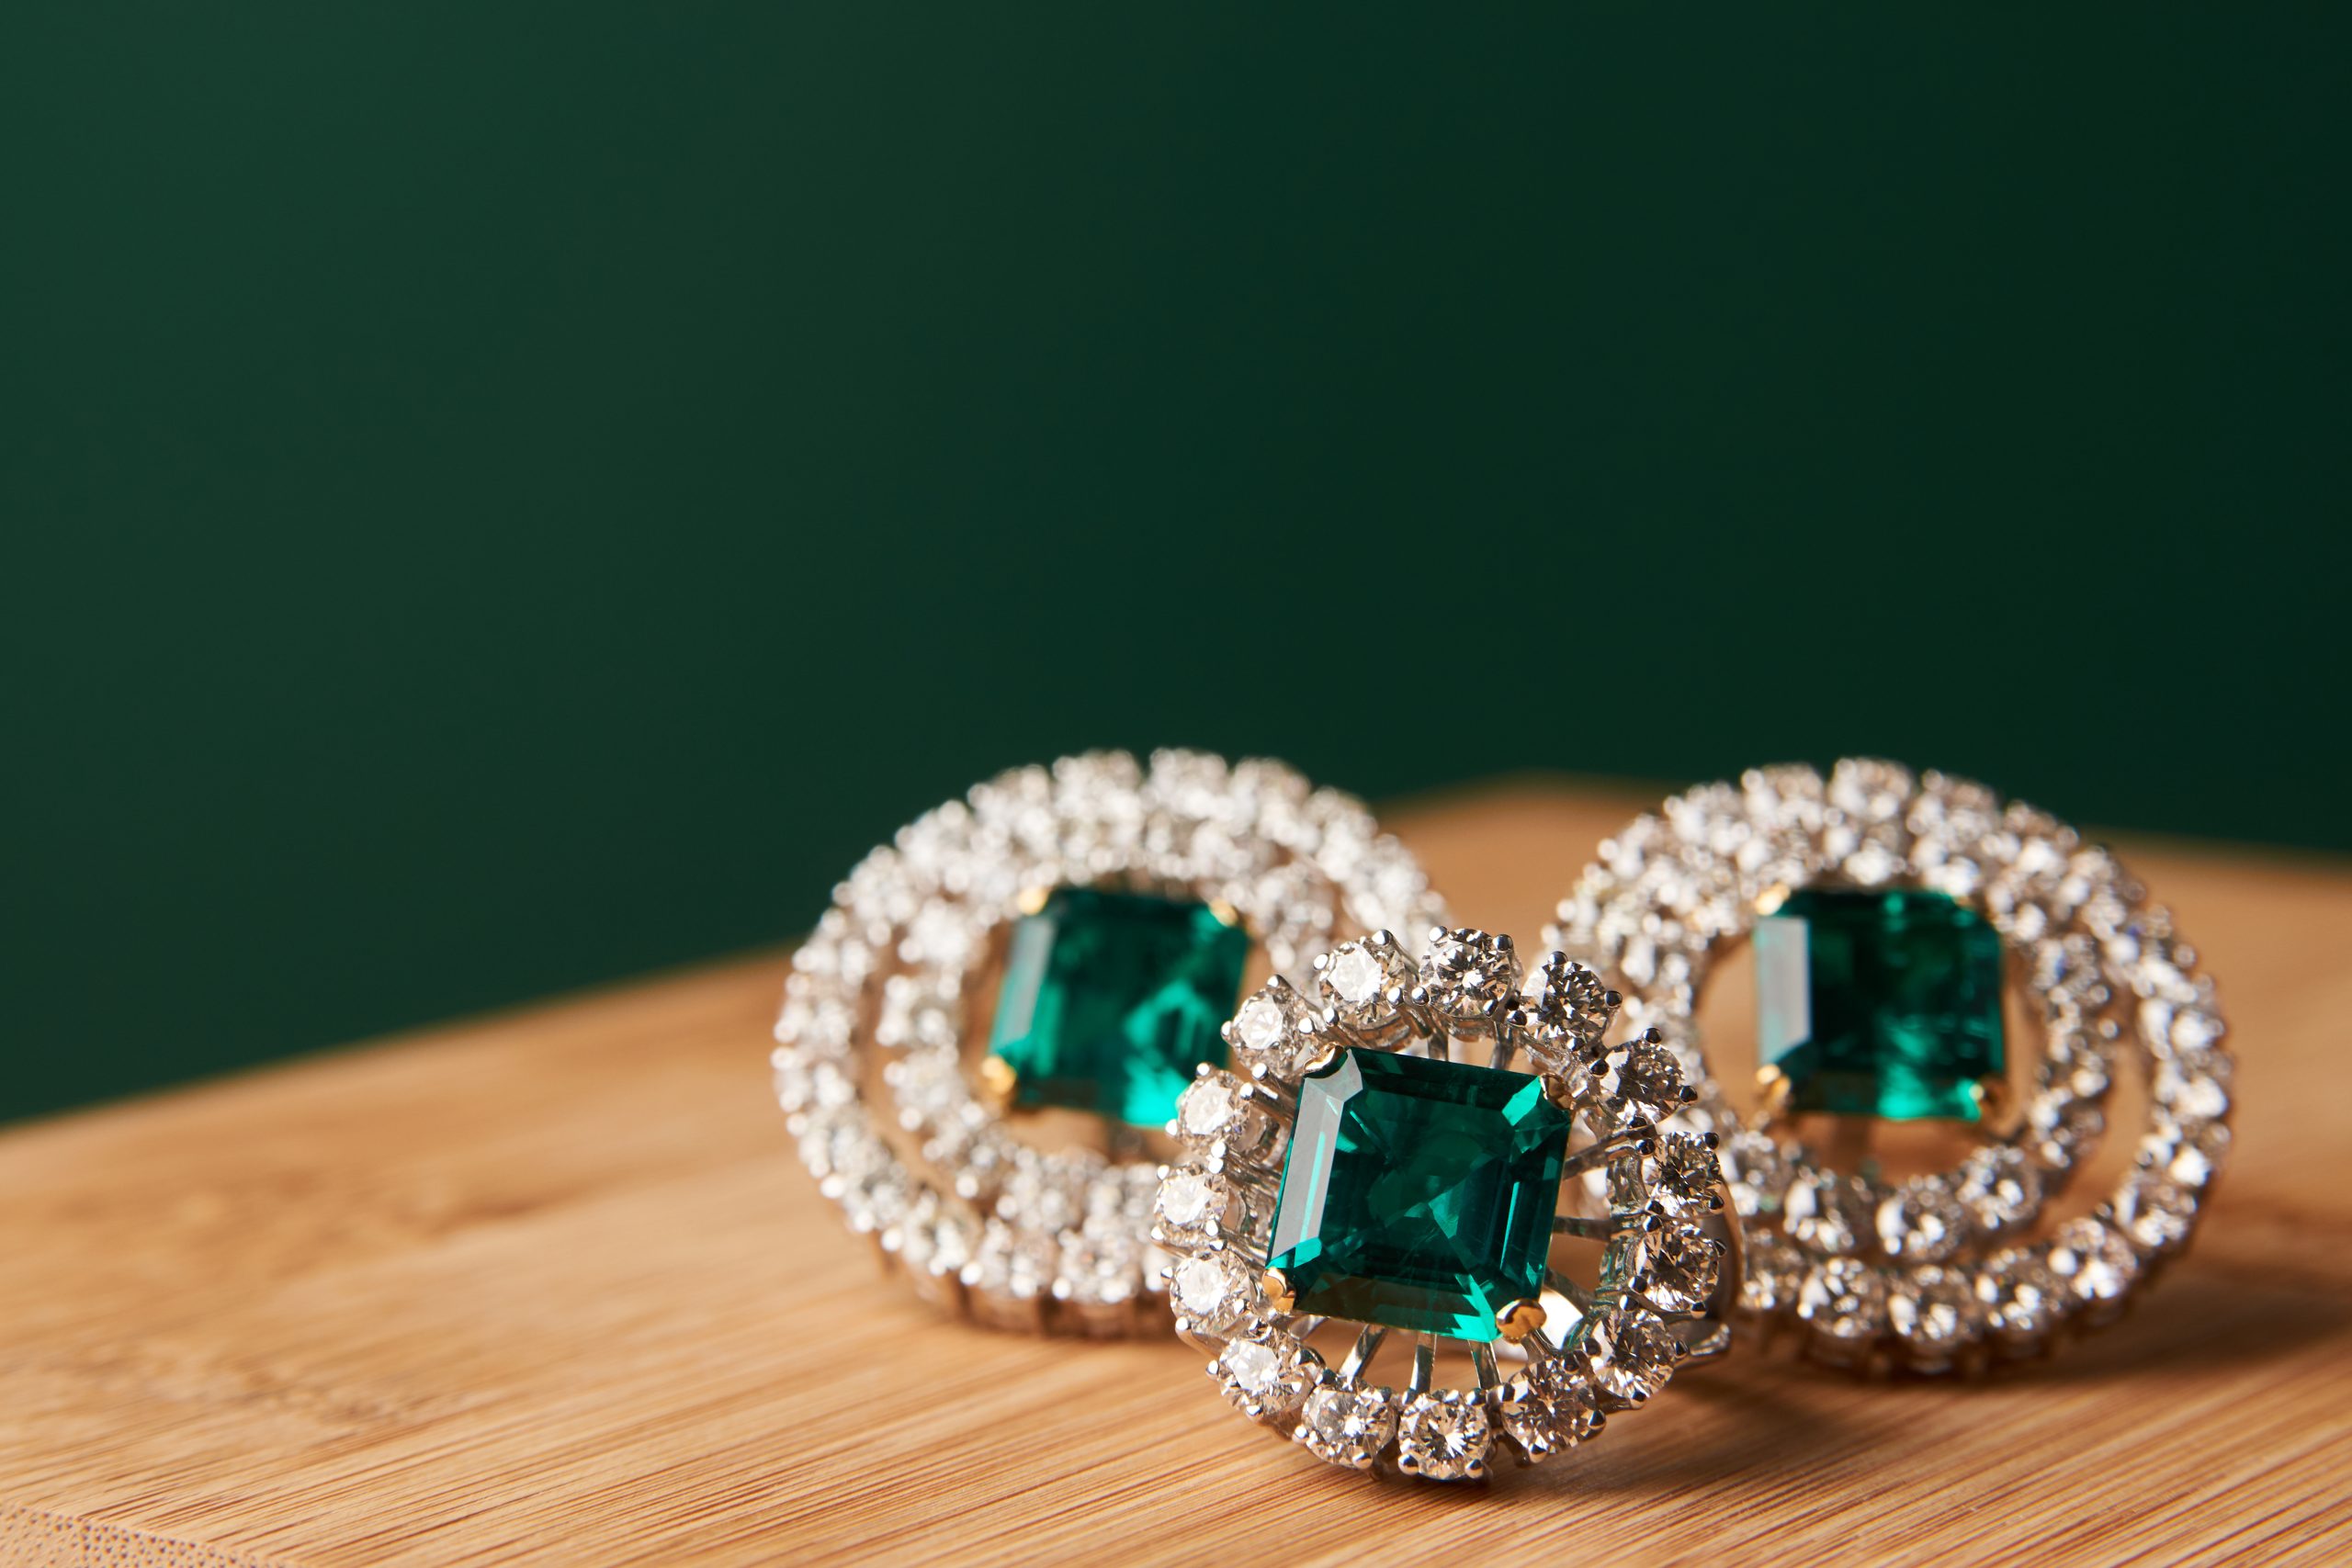 Emerald, the gemstone that captivates the eye.